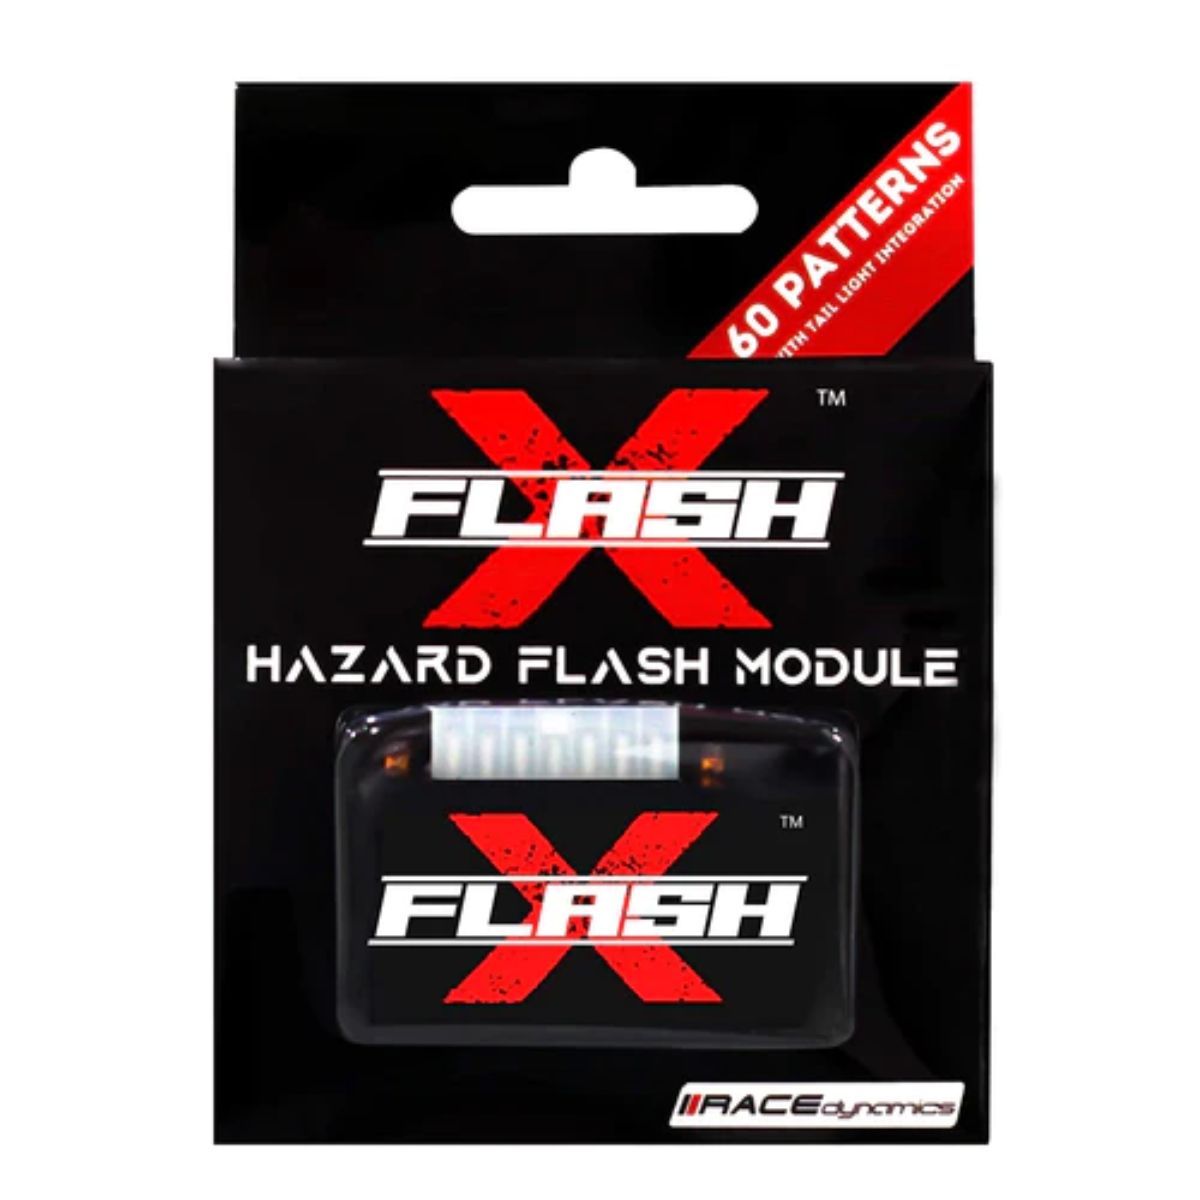 FlashX Hazard Flash Module for Bajaj 1